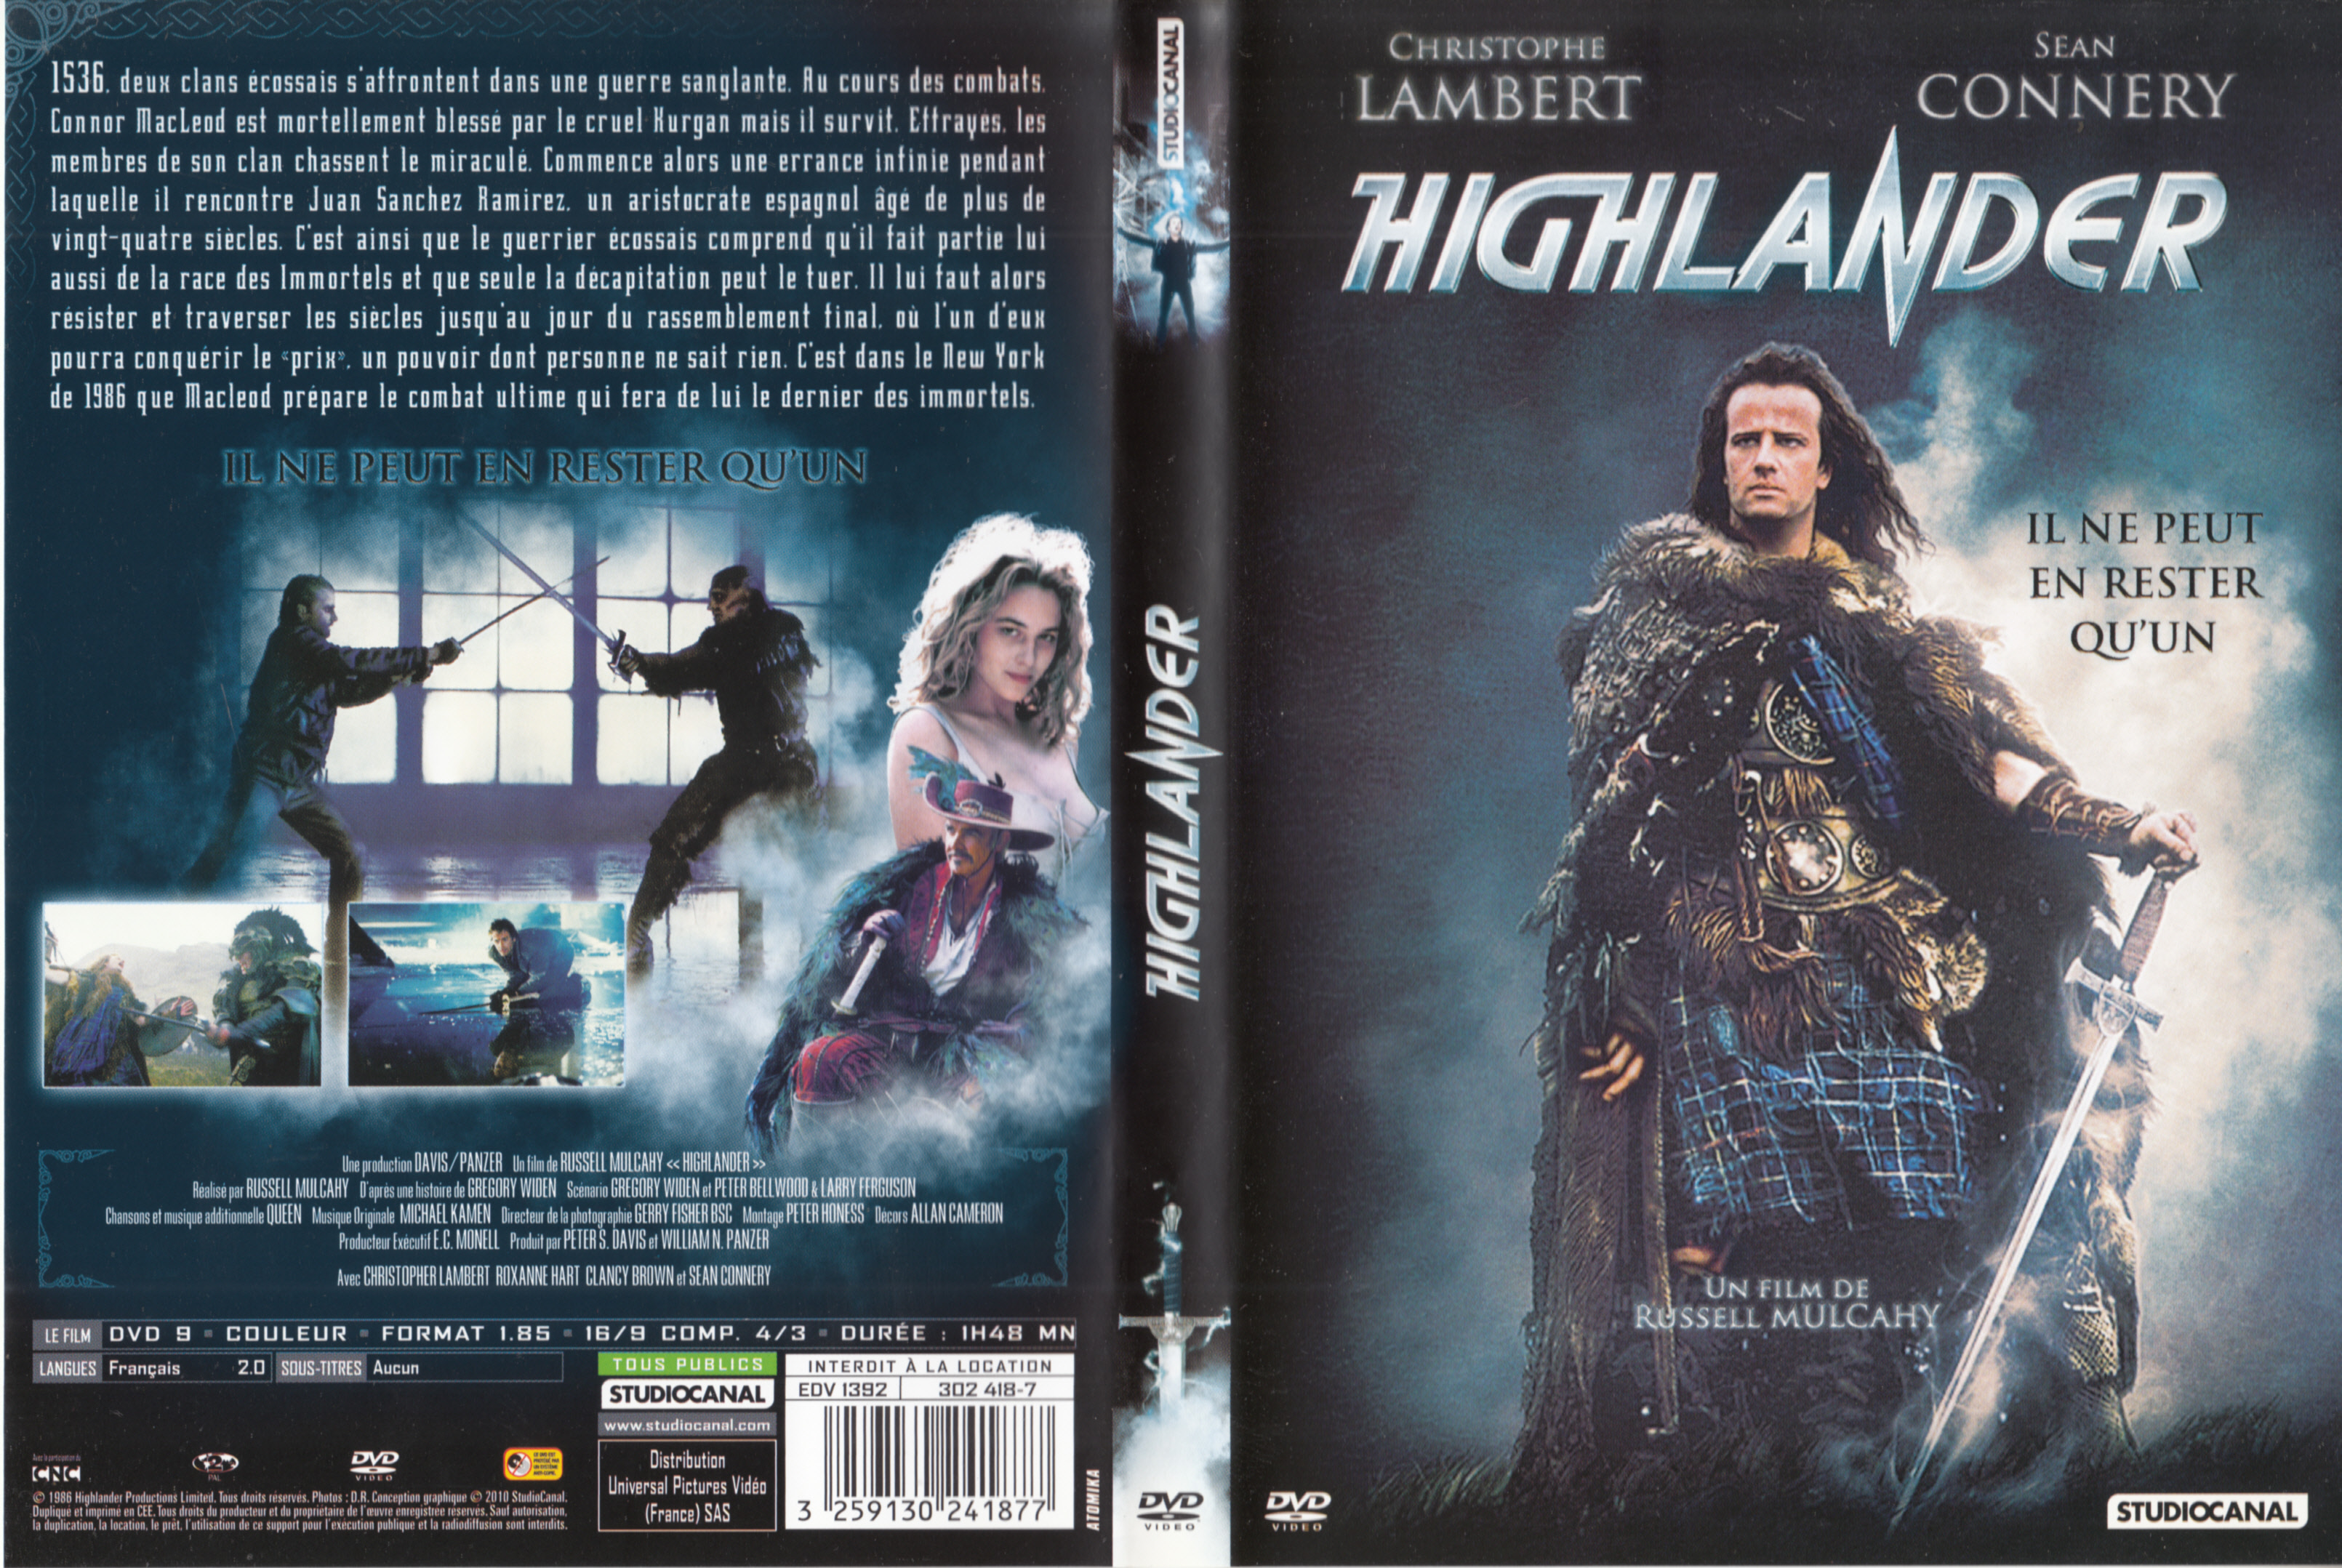 Jaquette DVD Highlander v3